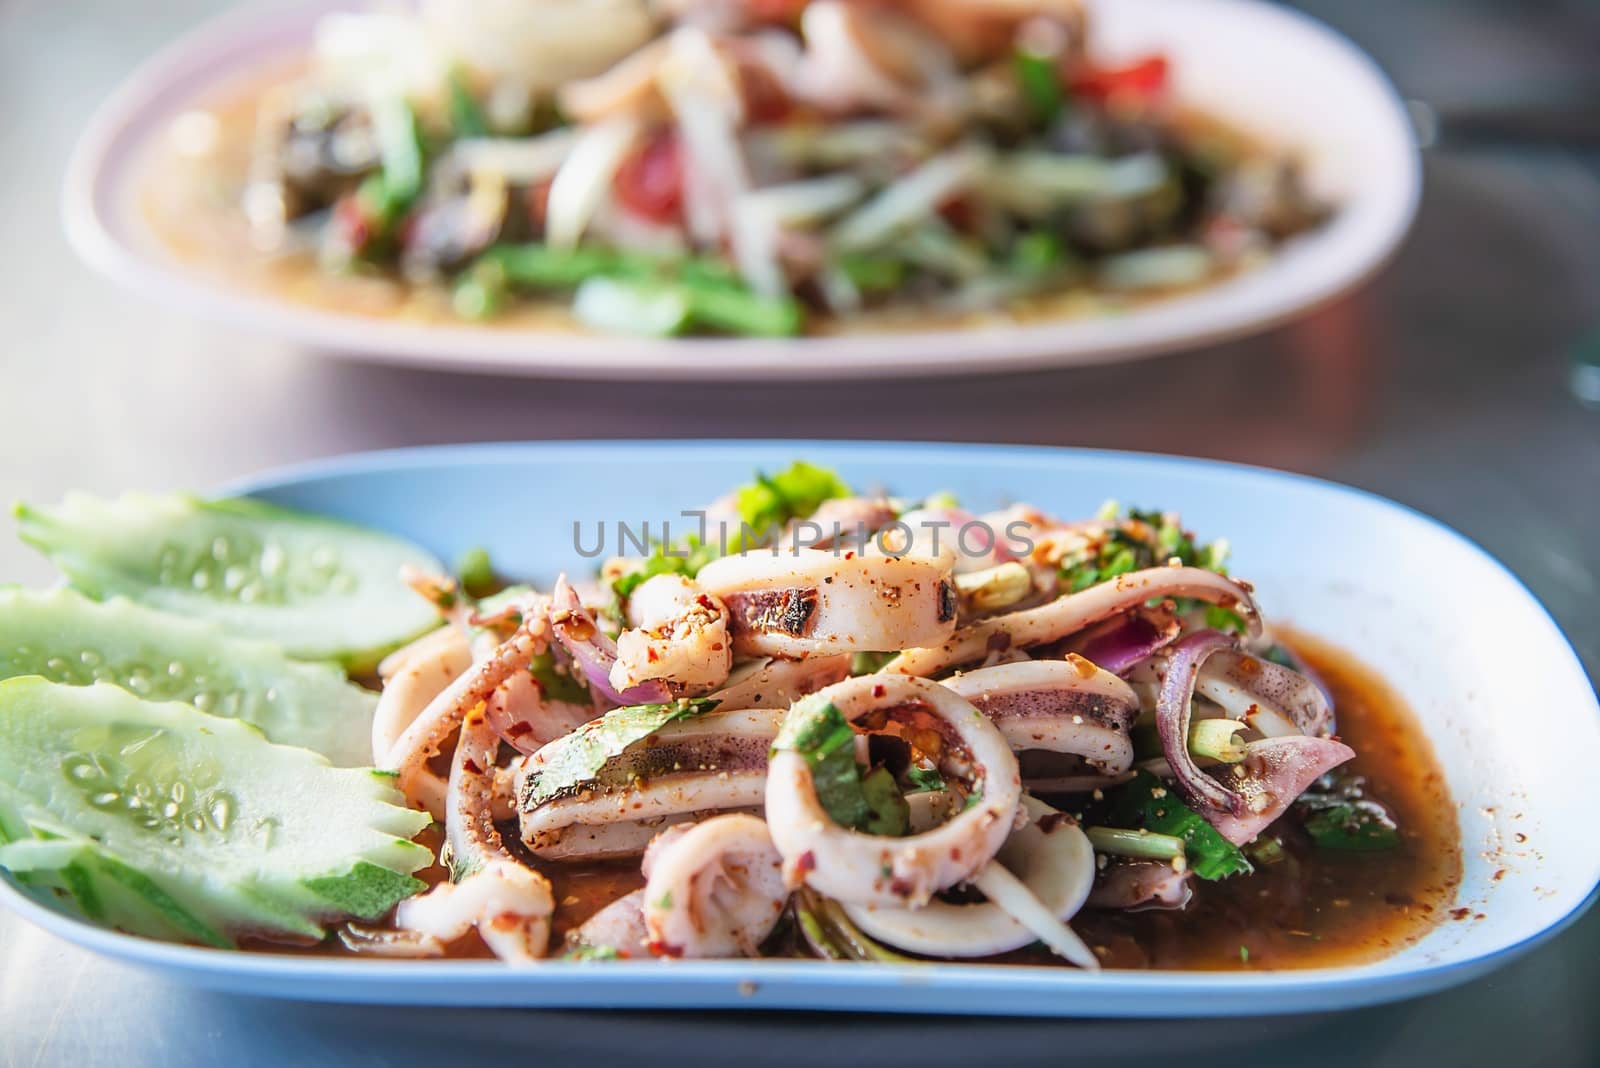 Thai spicy squid salad - Thai famous food recipe